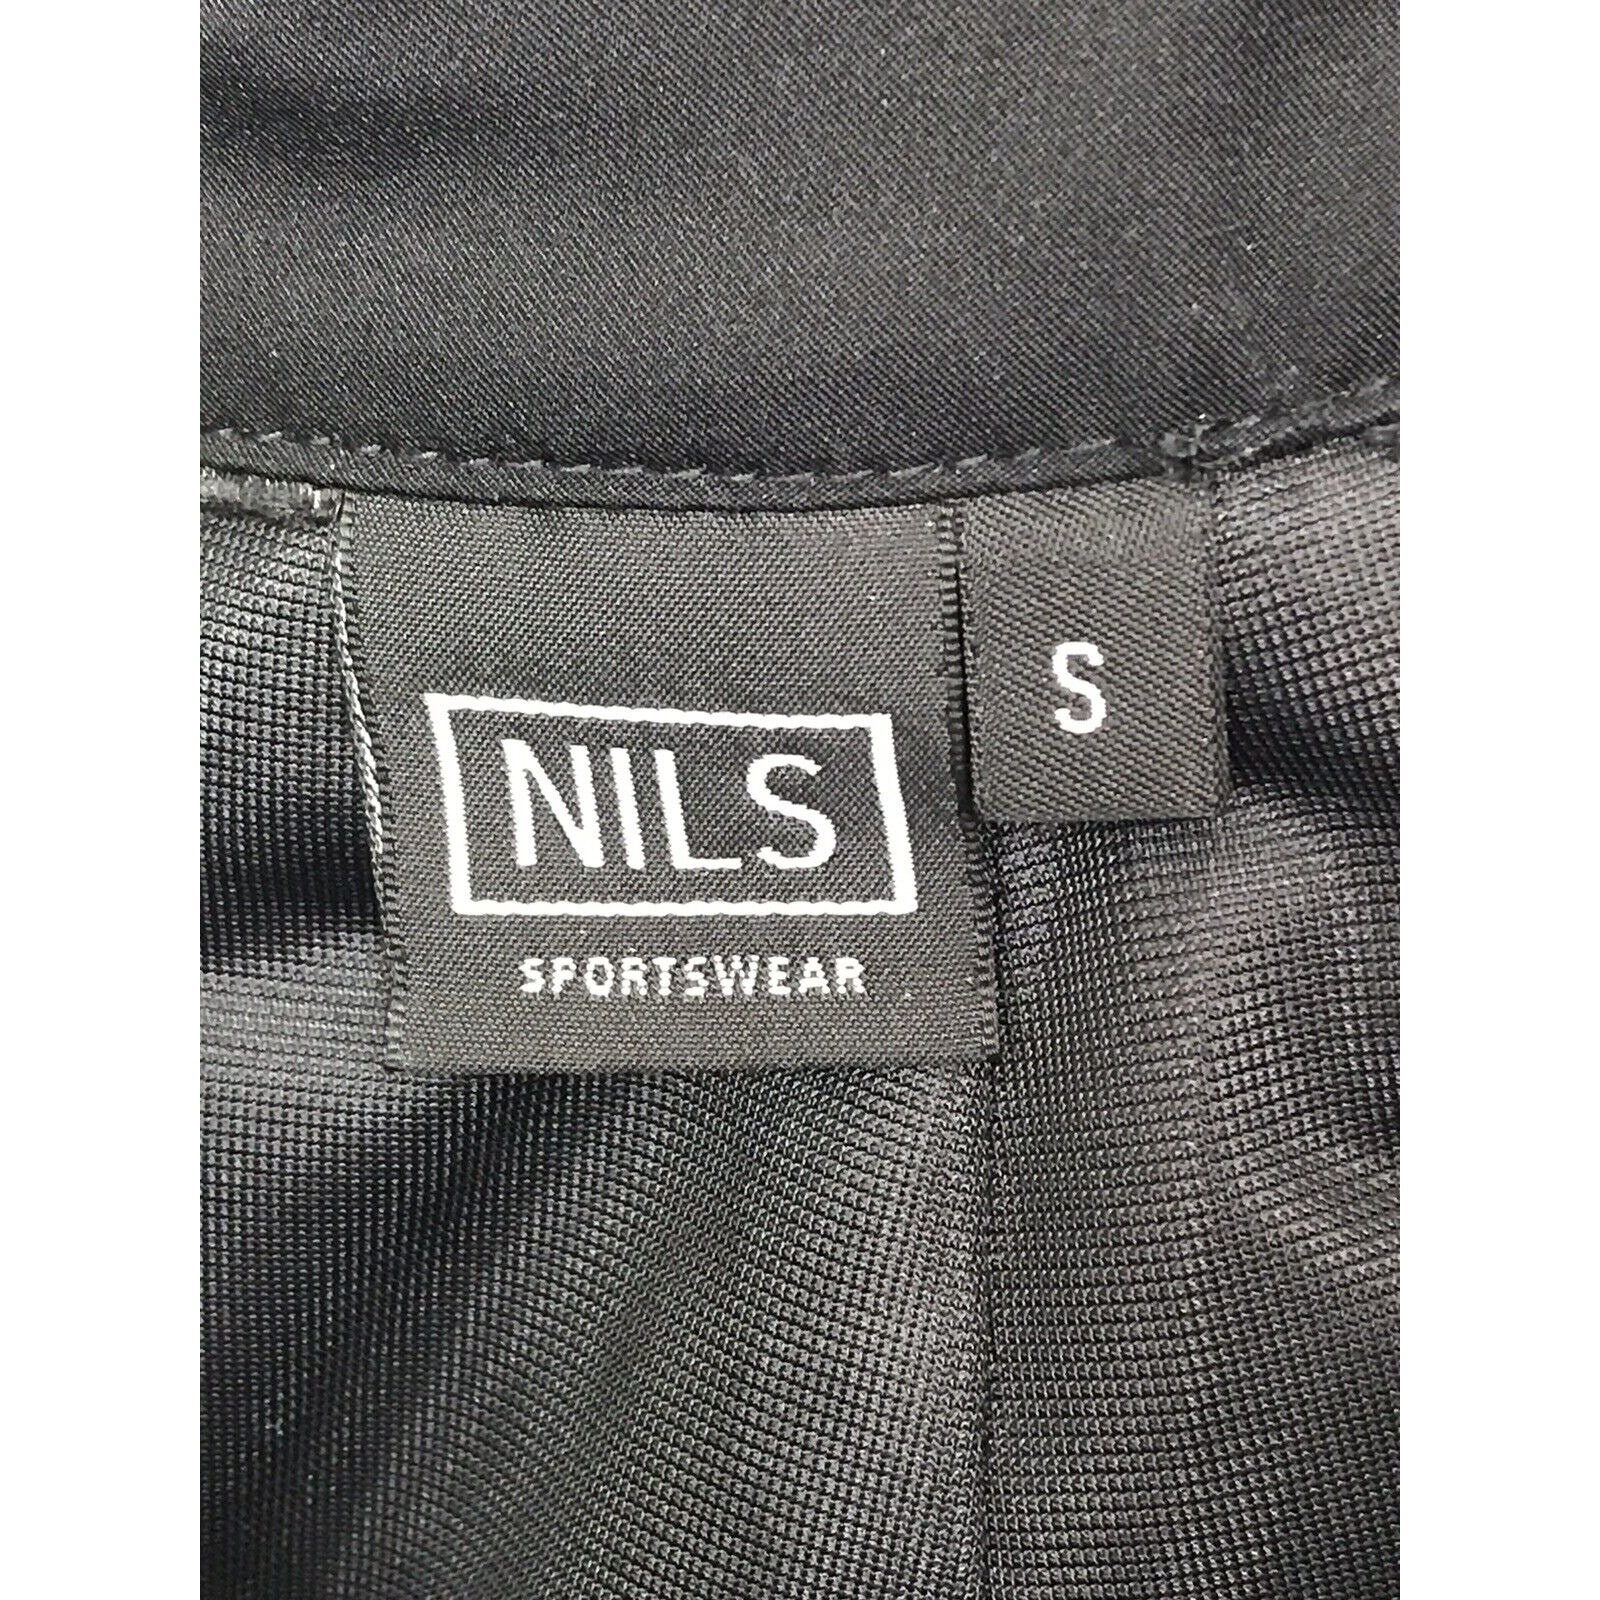 NILS SKIWEAR Womens Black Ski Pants Short Size Small -  UK